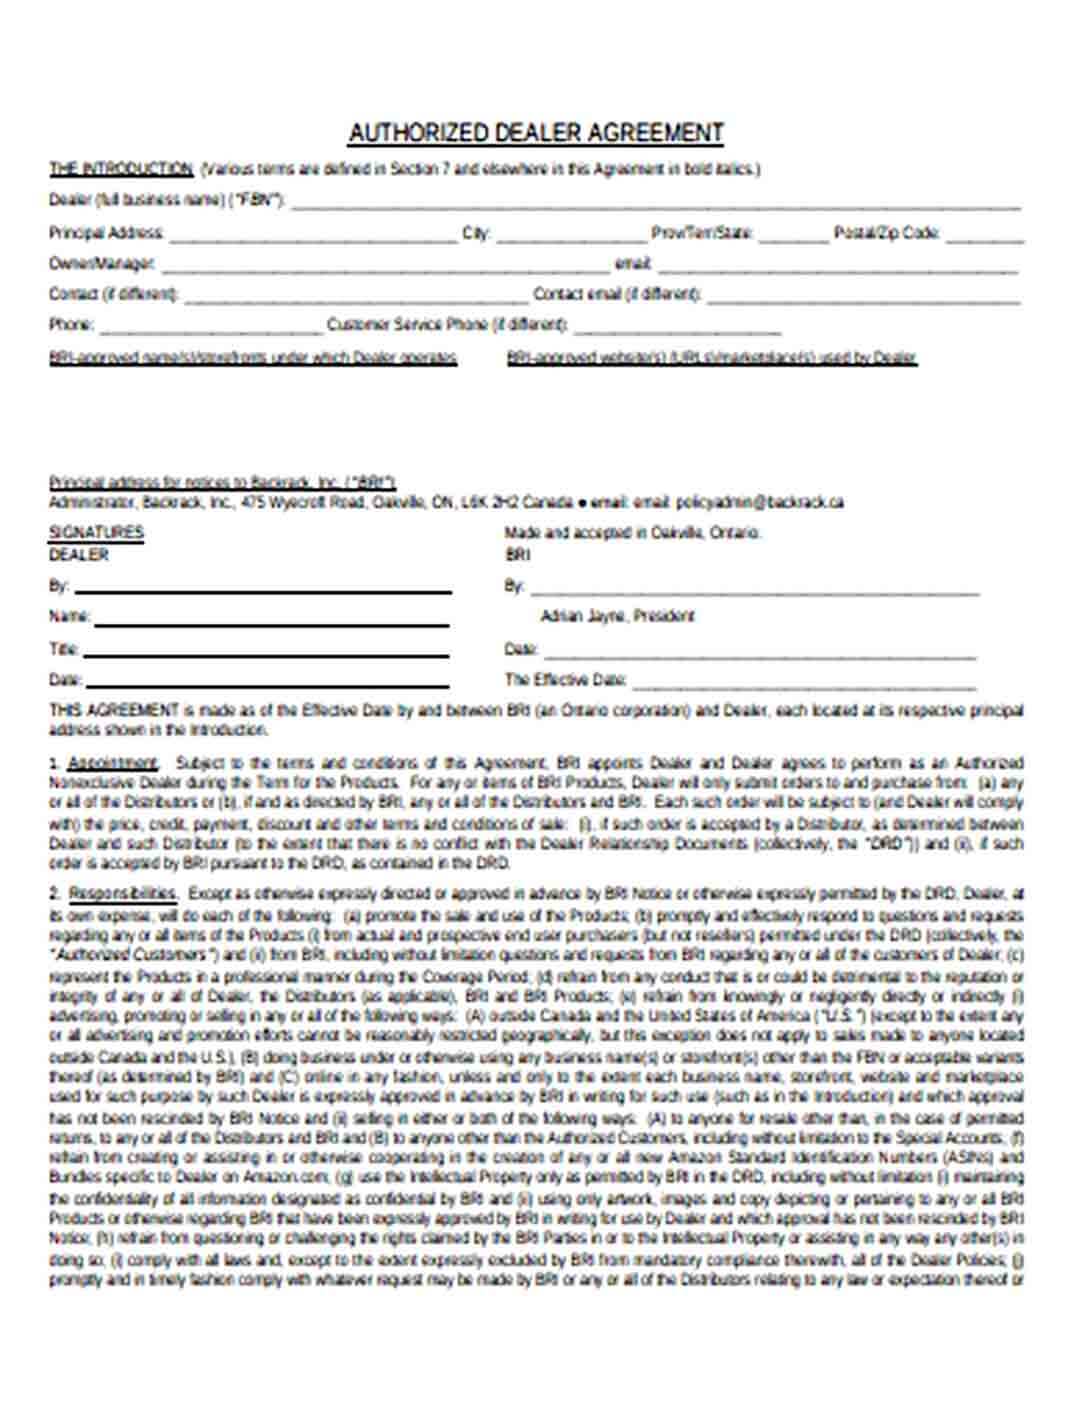 Sample Authorised Dealer Agreement in PDF